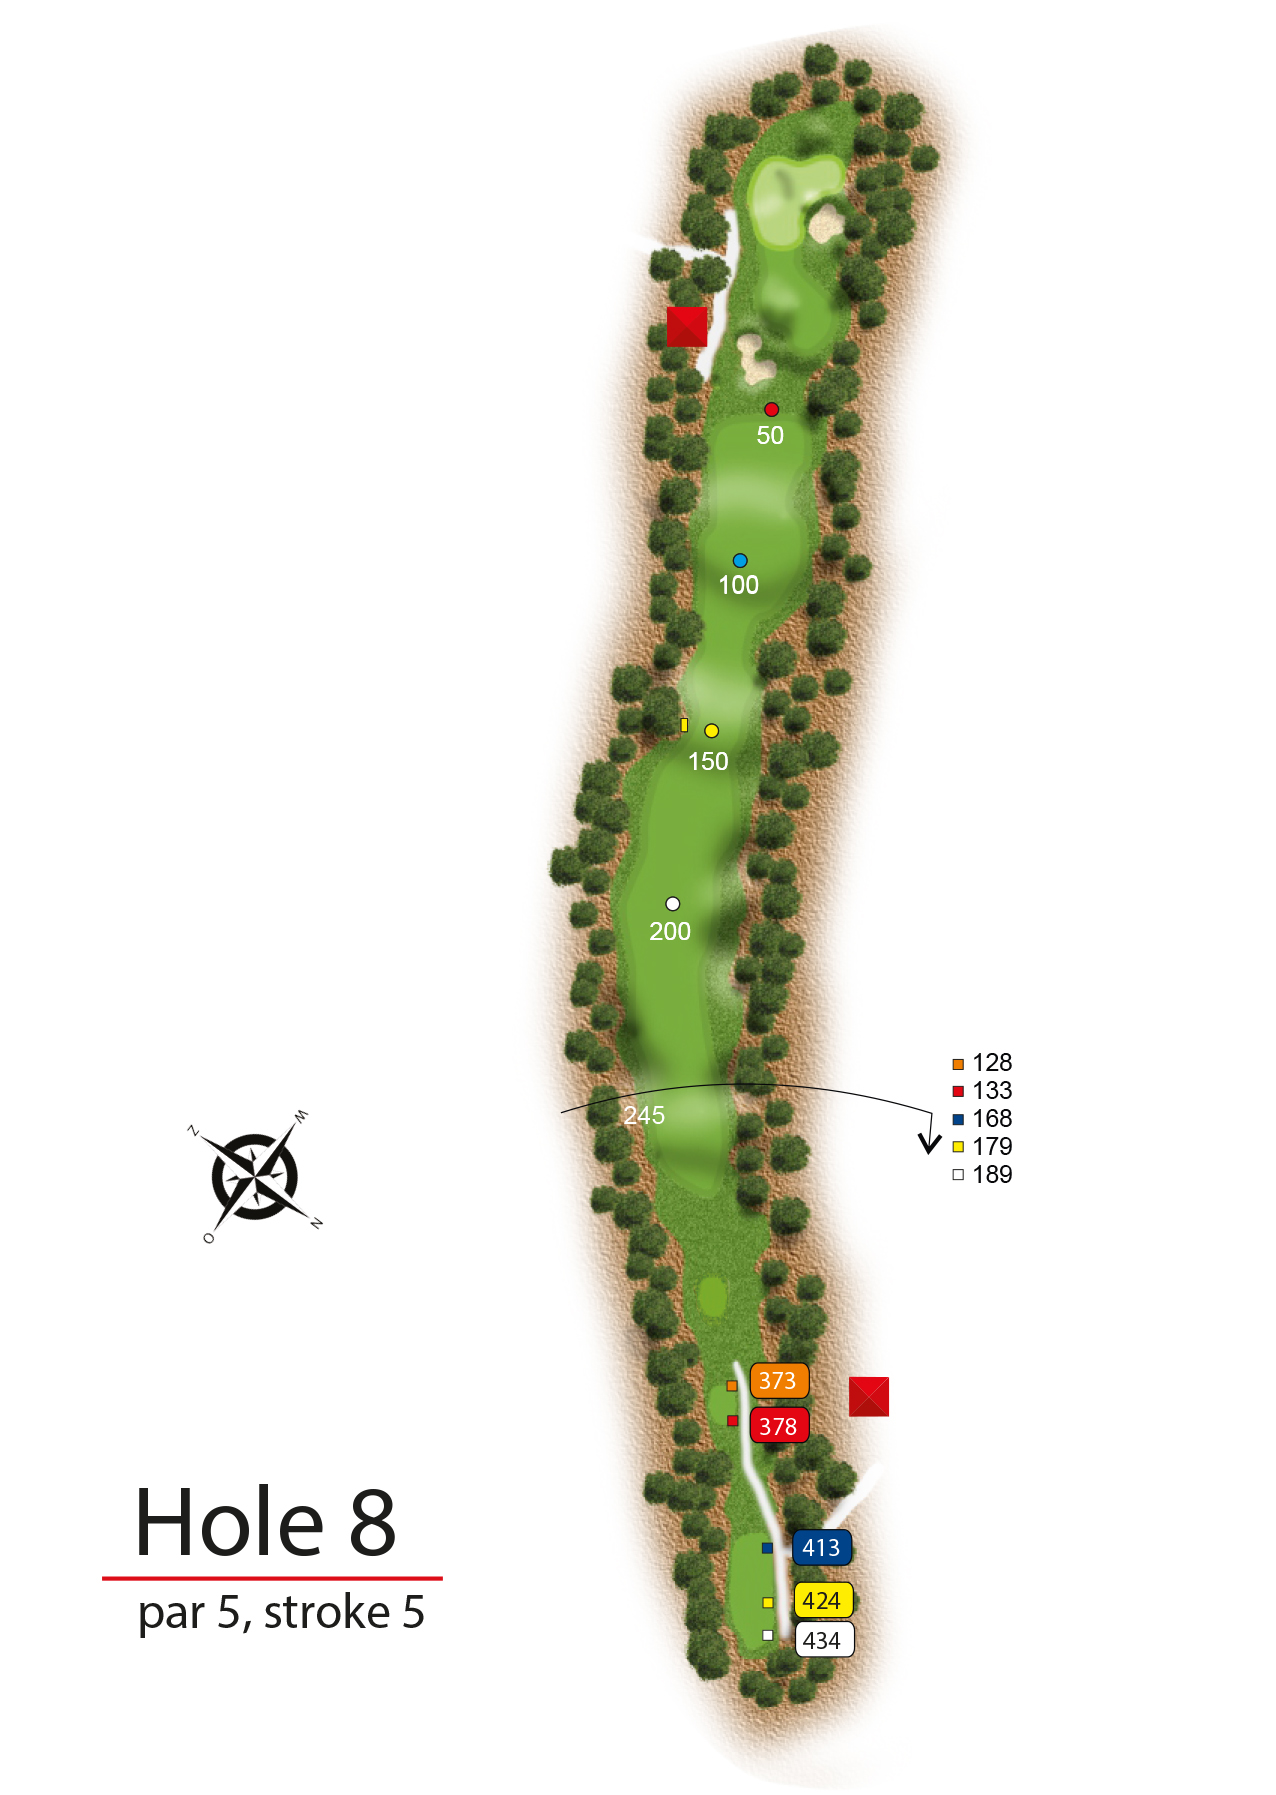 Hole 8 - simple